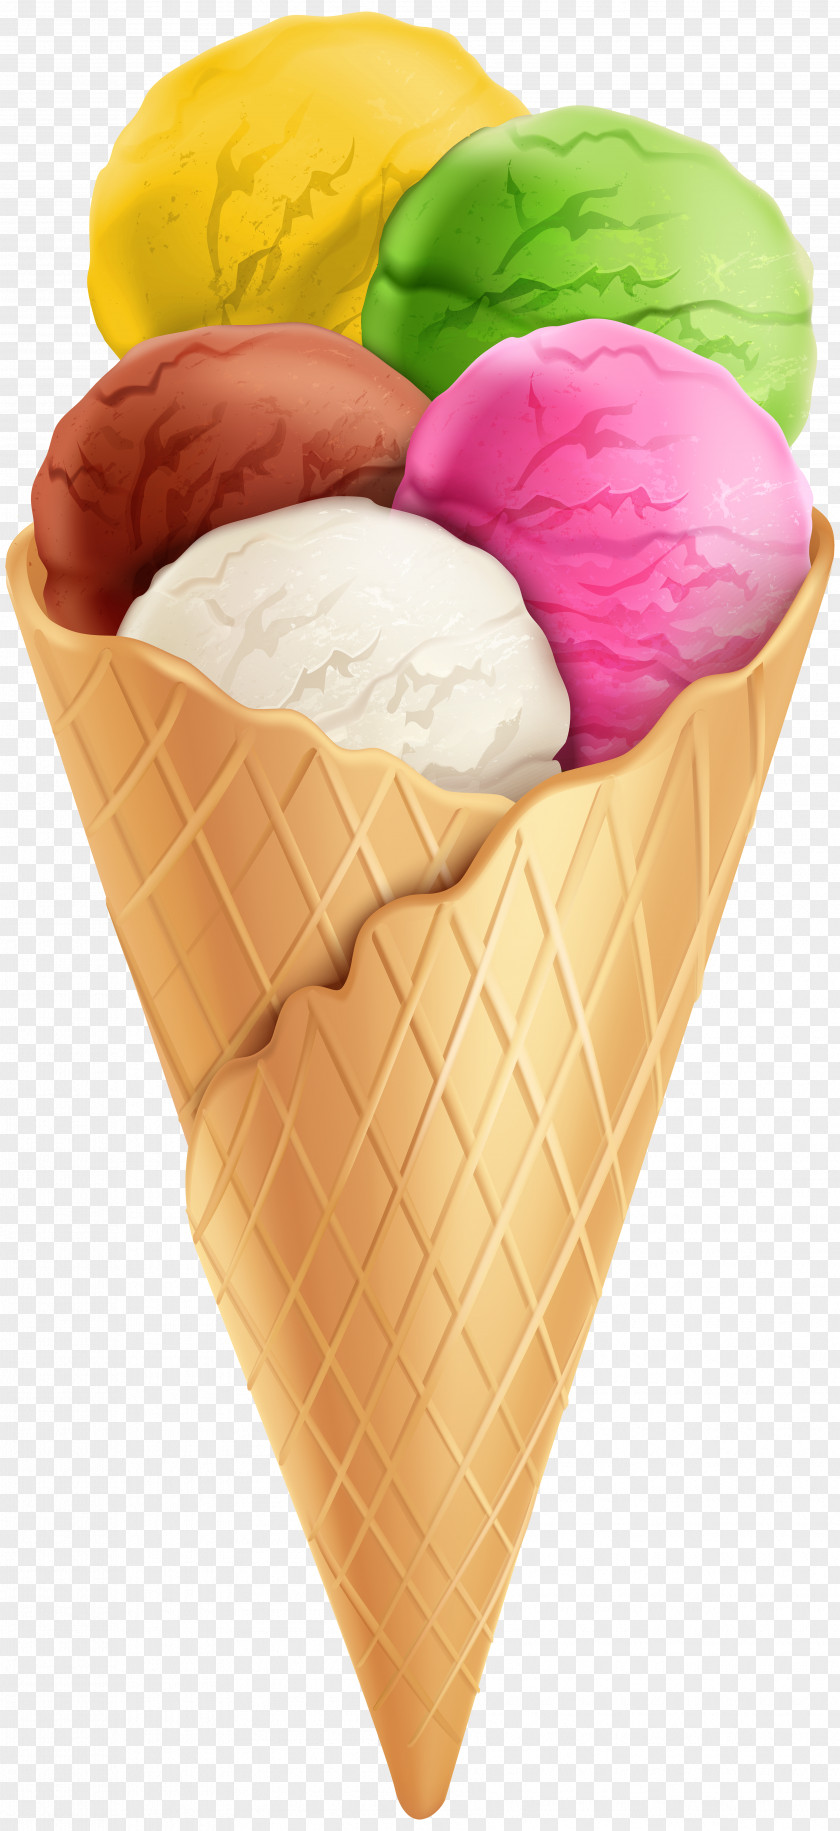 Ice Cream Transparent Clip Art Image Cone Chocolate Neapolitan PNG